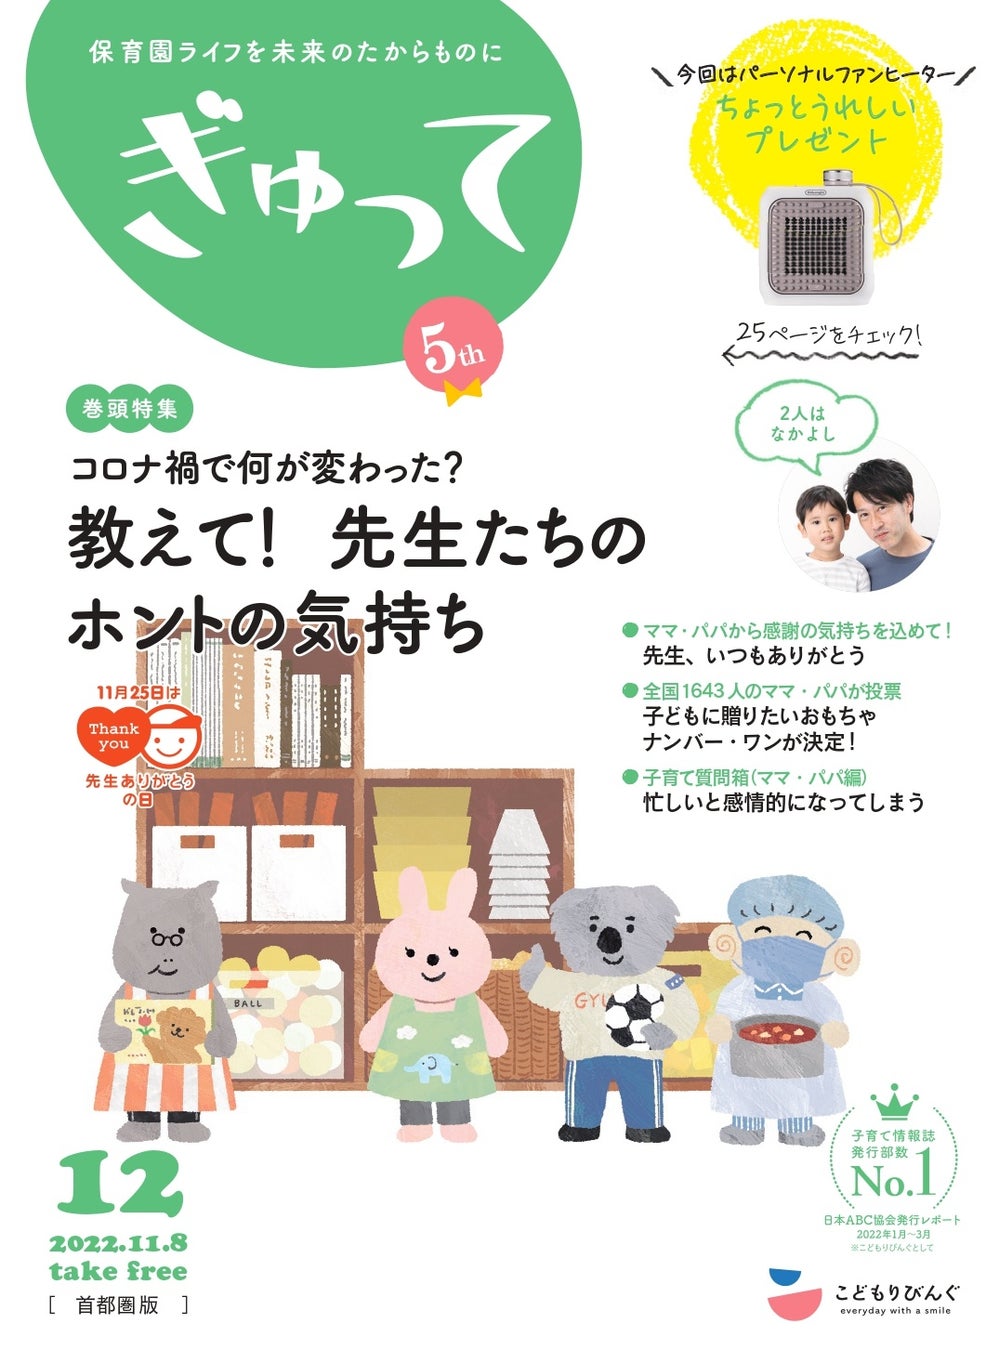 11月29日、人気育児雑誌が選ぶ子育てトレンドが発表第15回 ペアレンティングアワード2022 日本で一番読まれている子育て情報誌「あんふぁん」「ぎゅって」が参加のサブ画像4